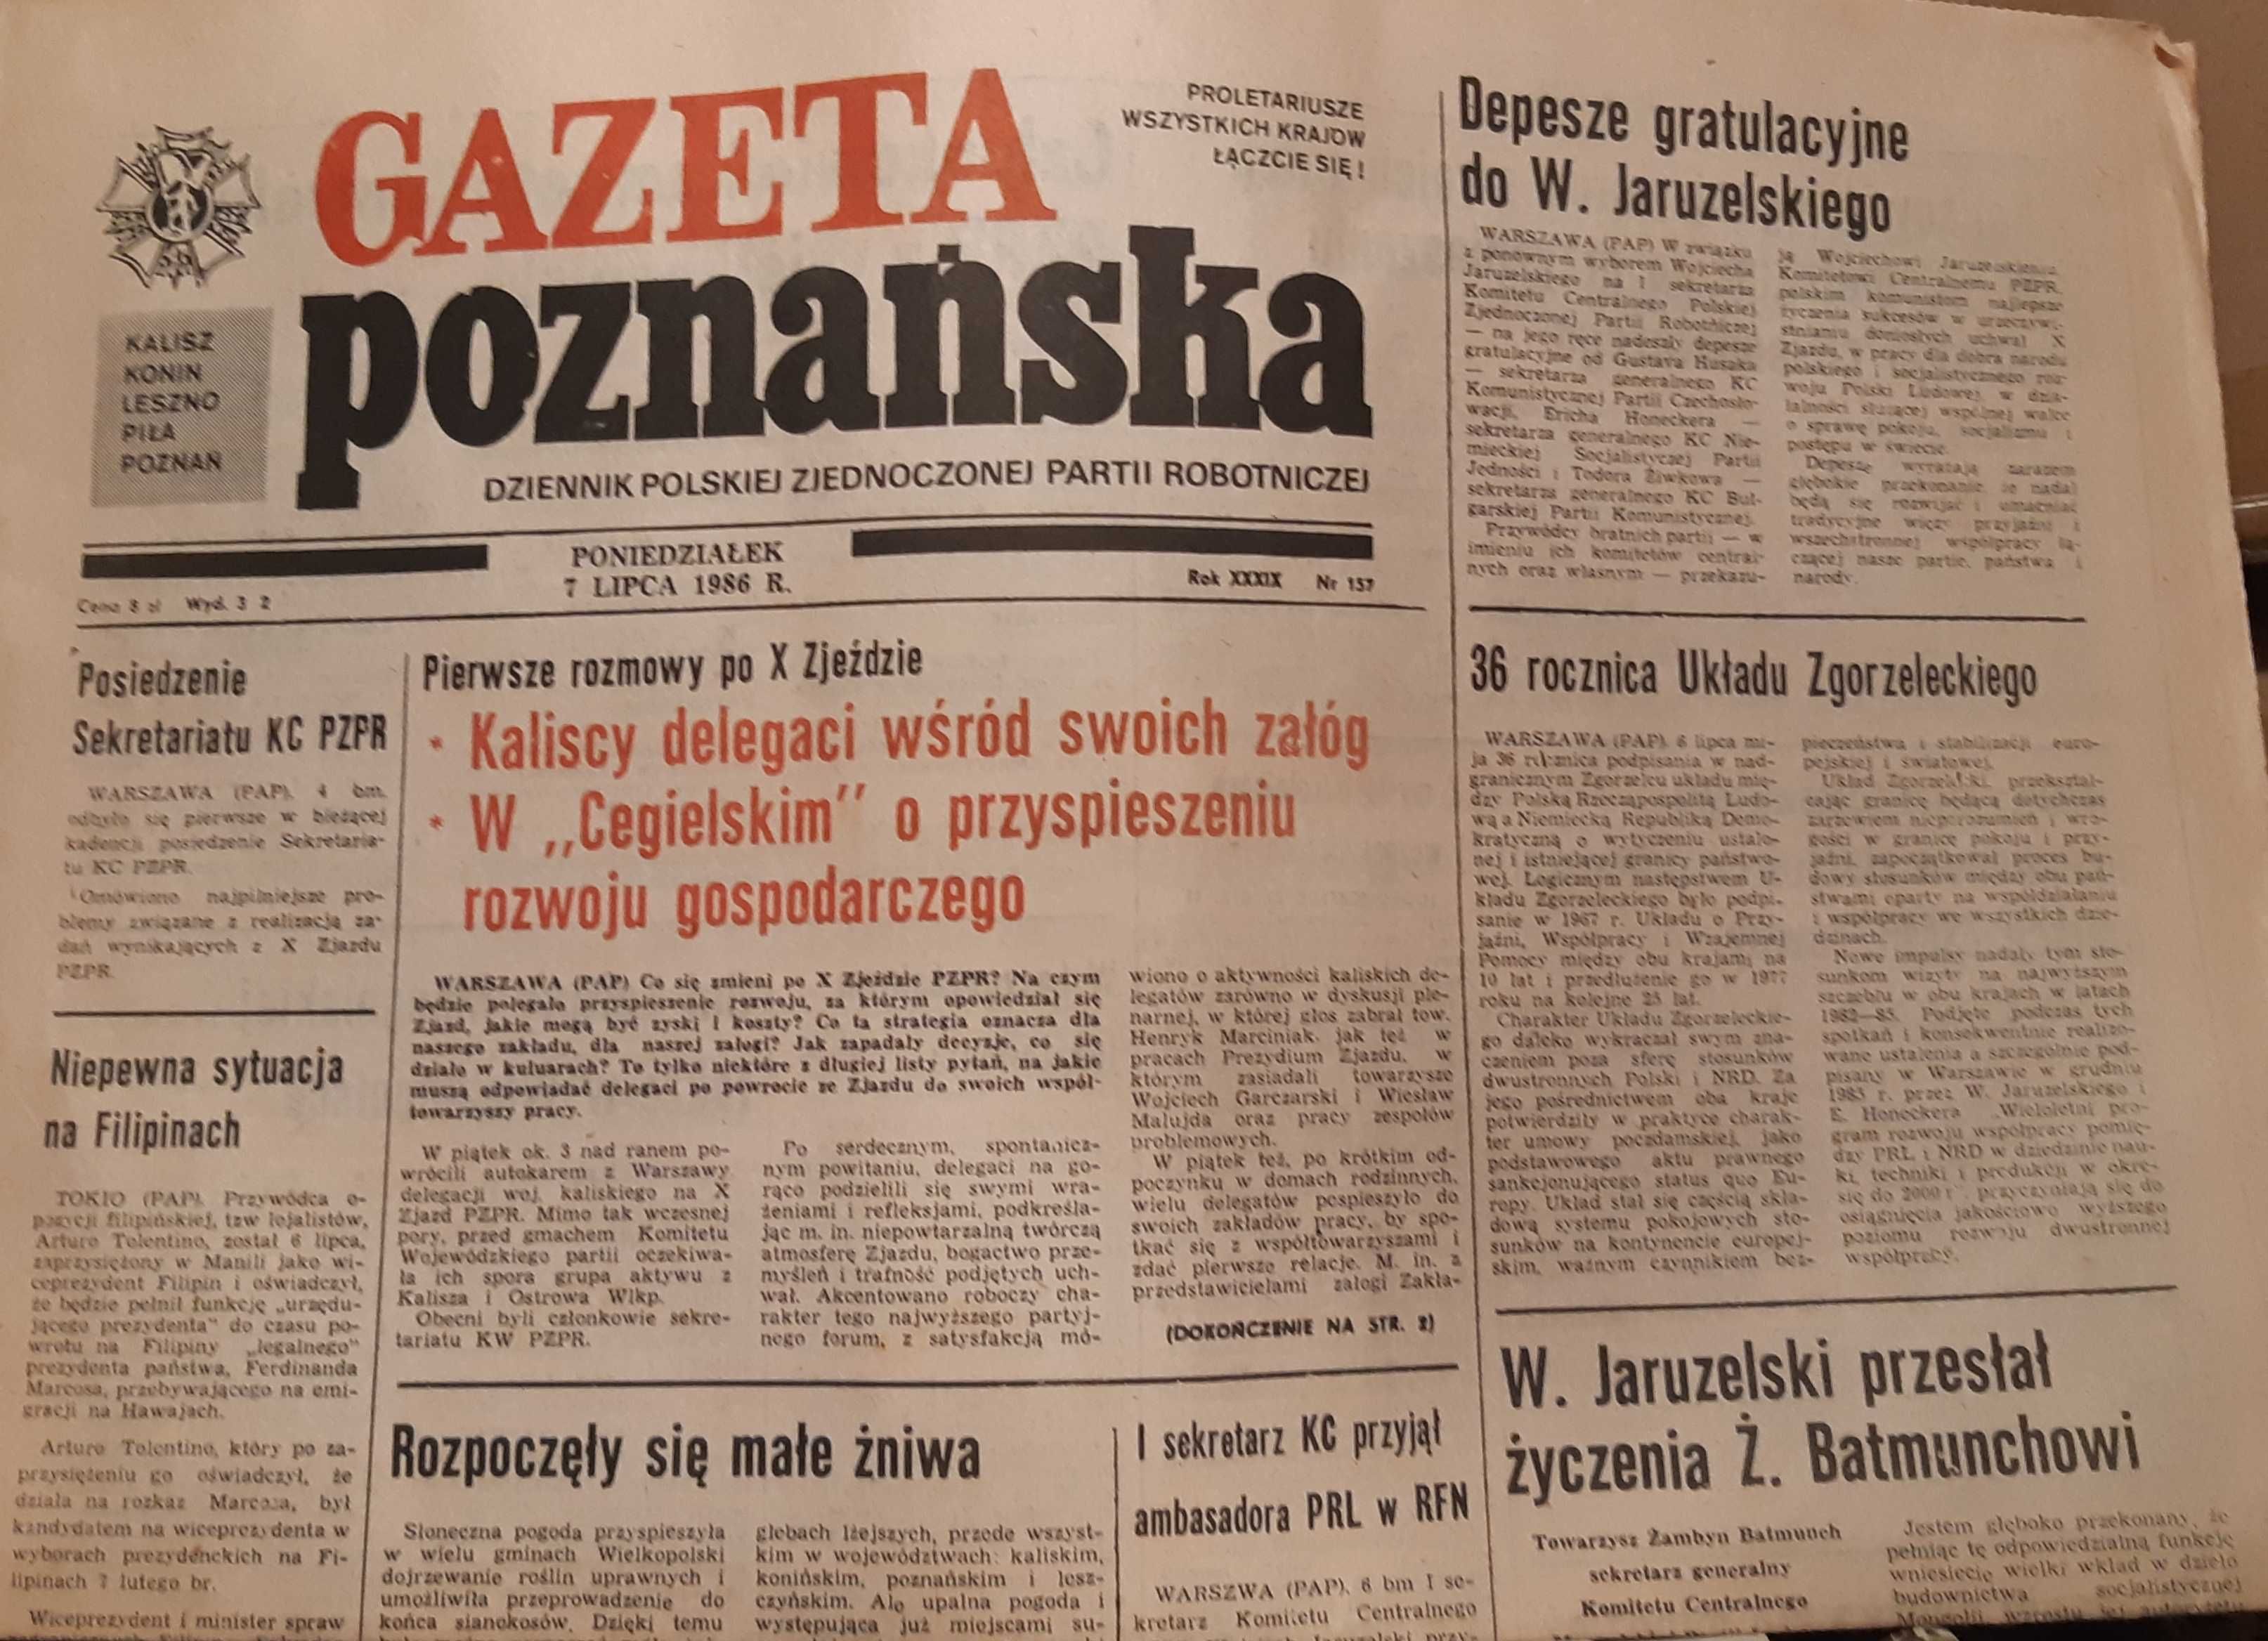 Gazeta poznańska 1986